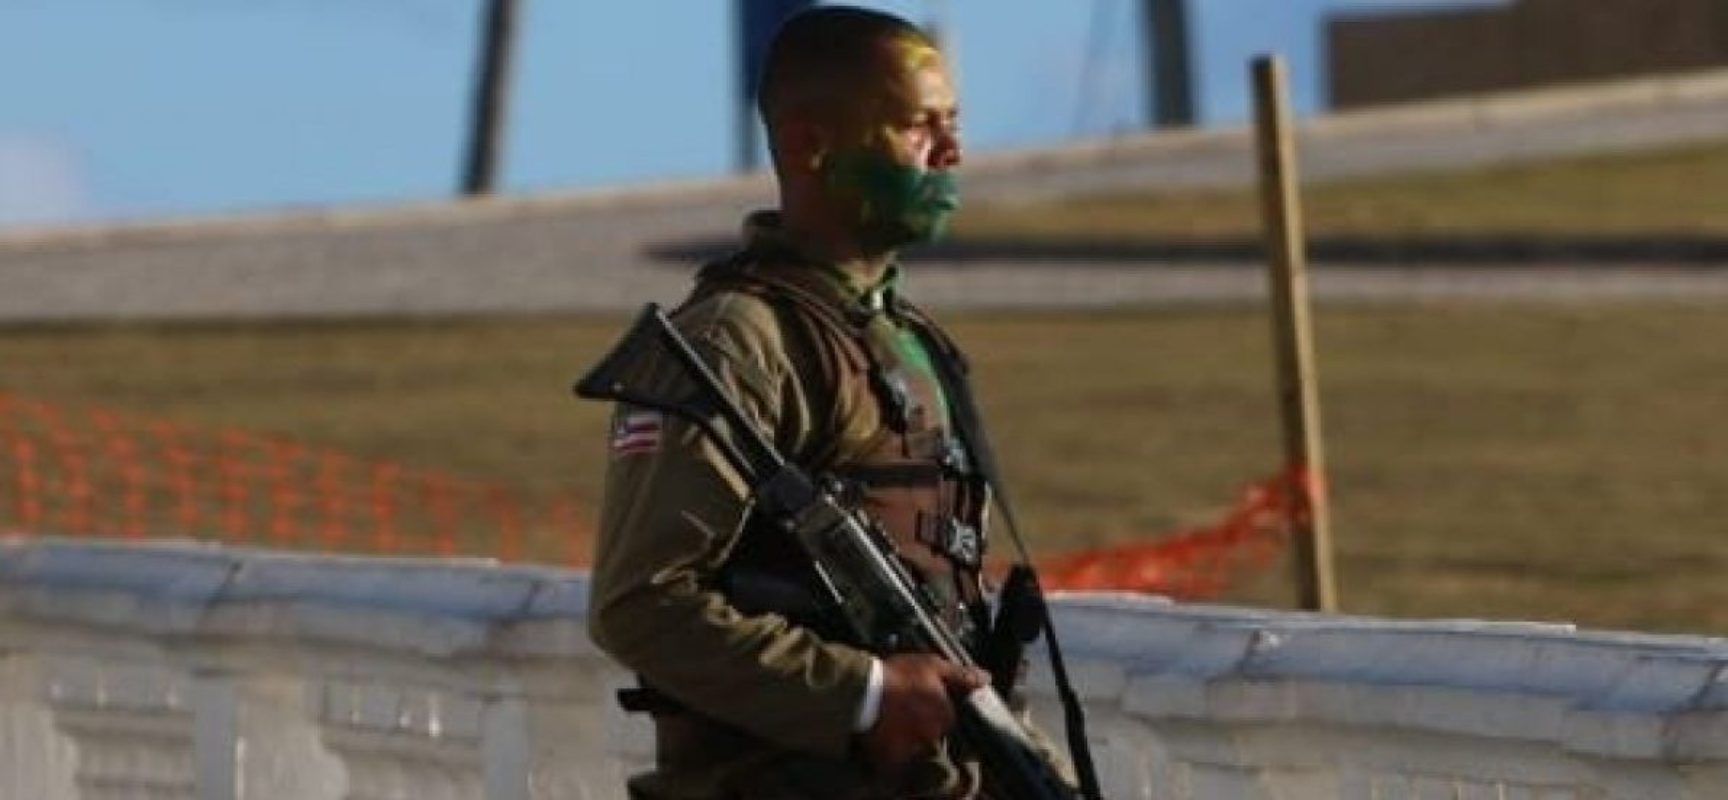 Morre o soldado da PM após surto e tiroteio no Farol da Barra